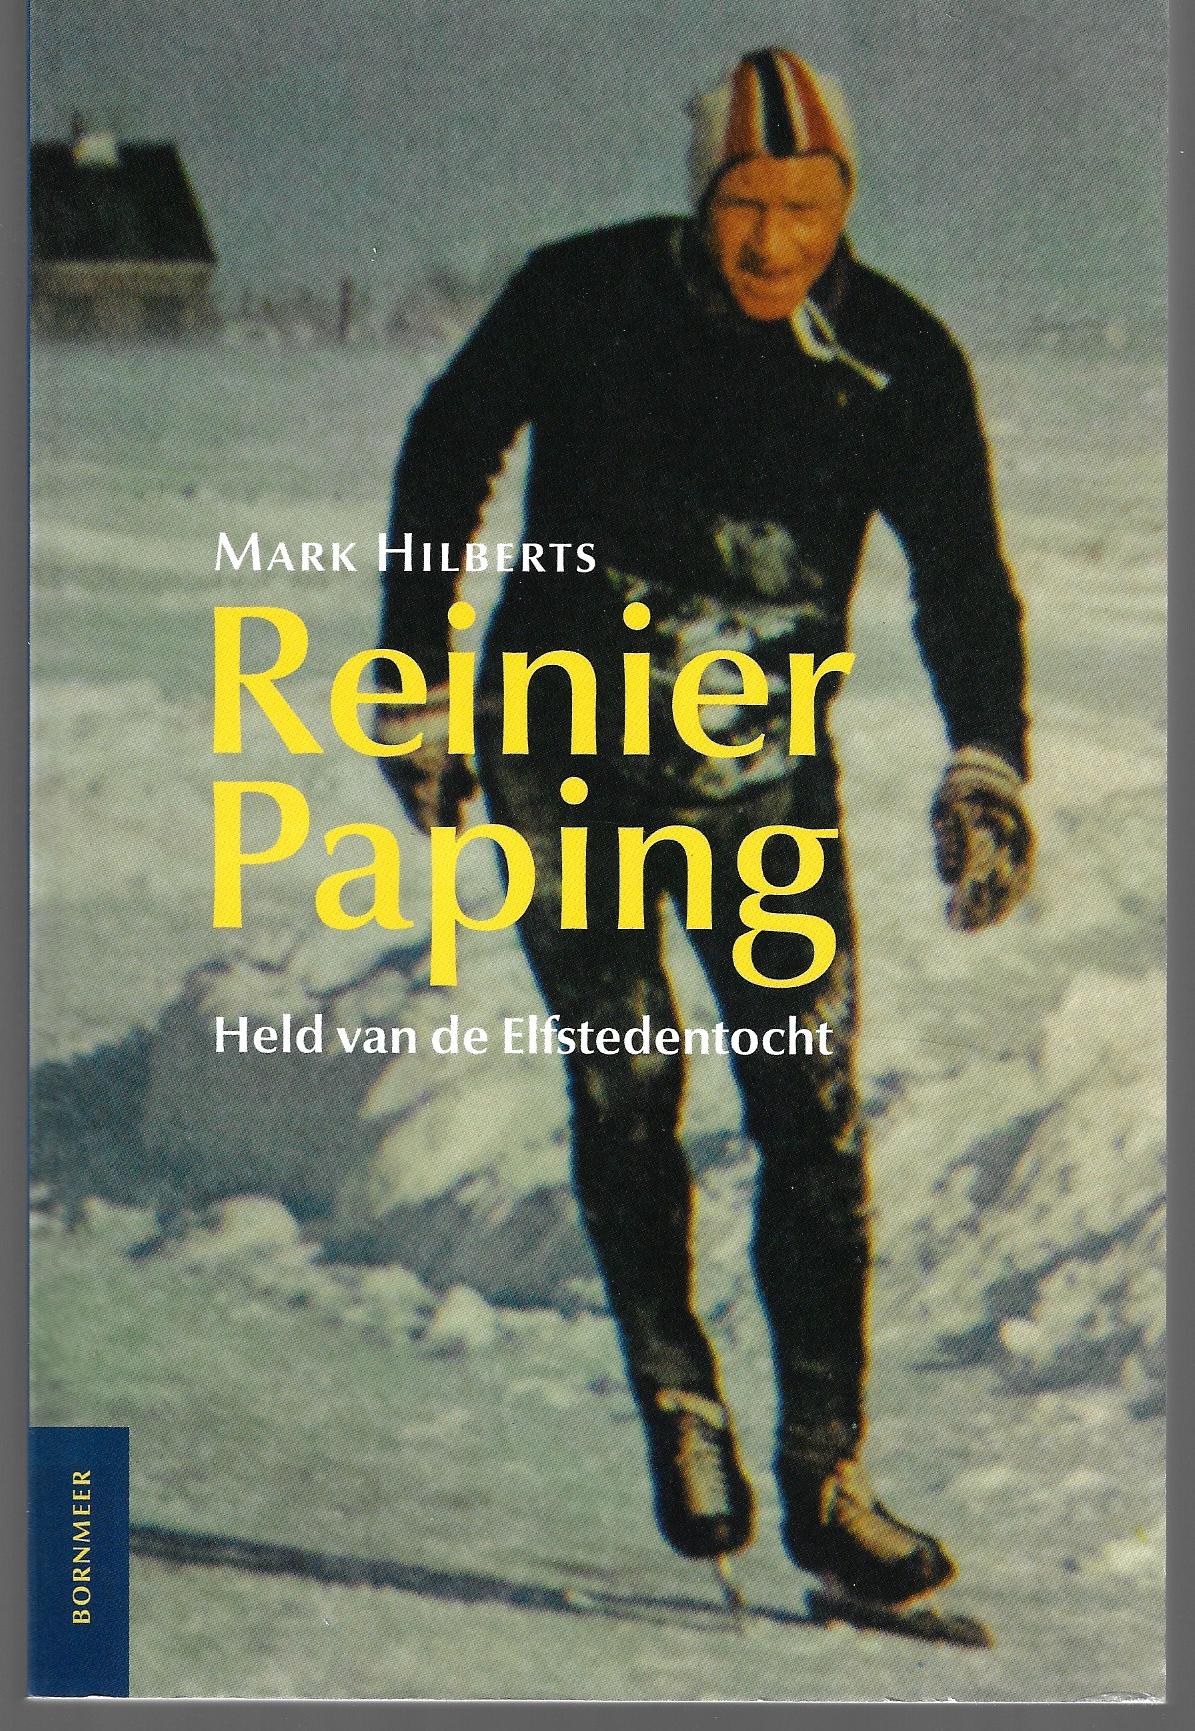 Hilberts, Mark - Reinier Paping -Held van de Elfstedentocht